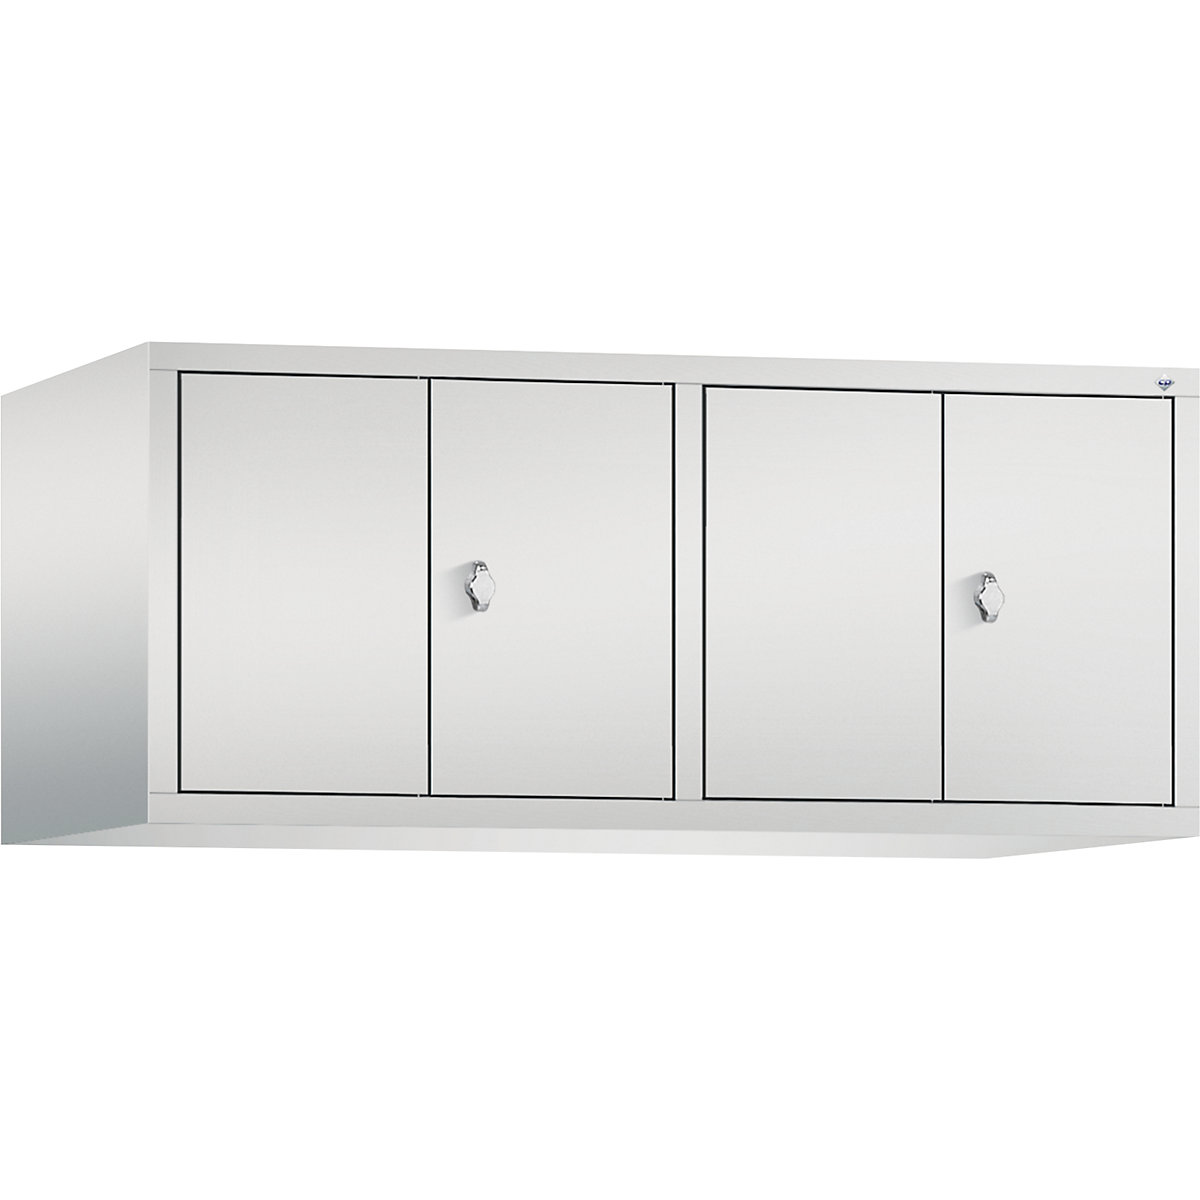 Altillo CLASSIC, puertas batientes que cierran al ras entre sí – C+P, 4 compartimentos, anchura de compartimento 300 mm, gris luminoso